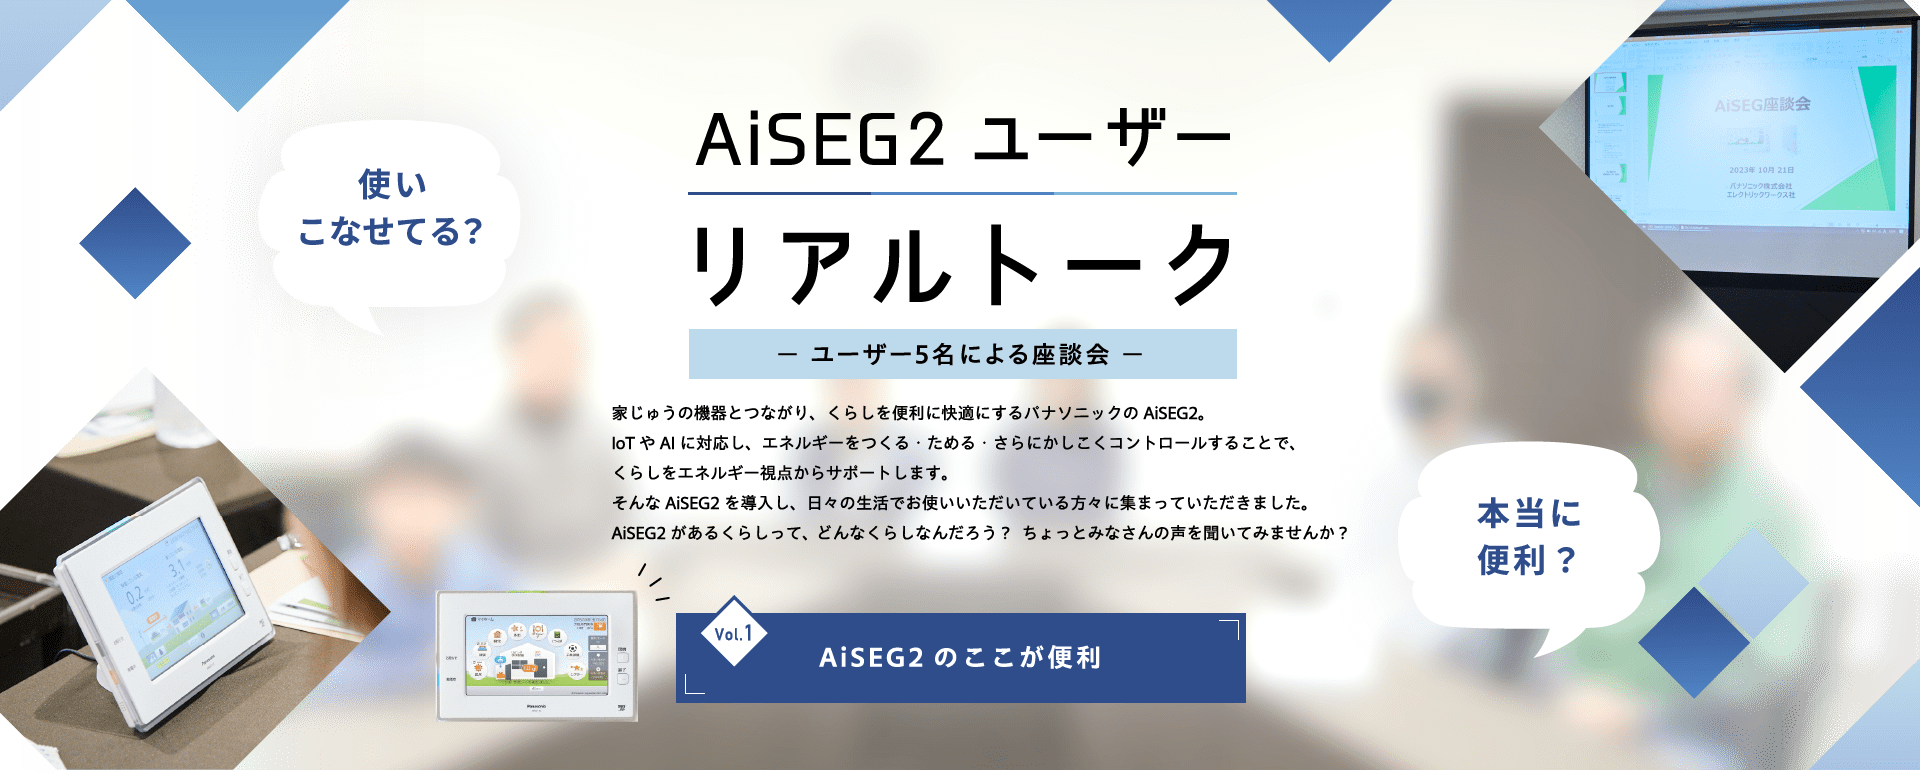 AiSEG2 ユーザー リアルトーク Vol1 AiSEG2のここが便利